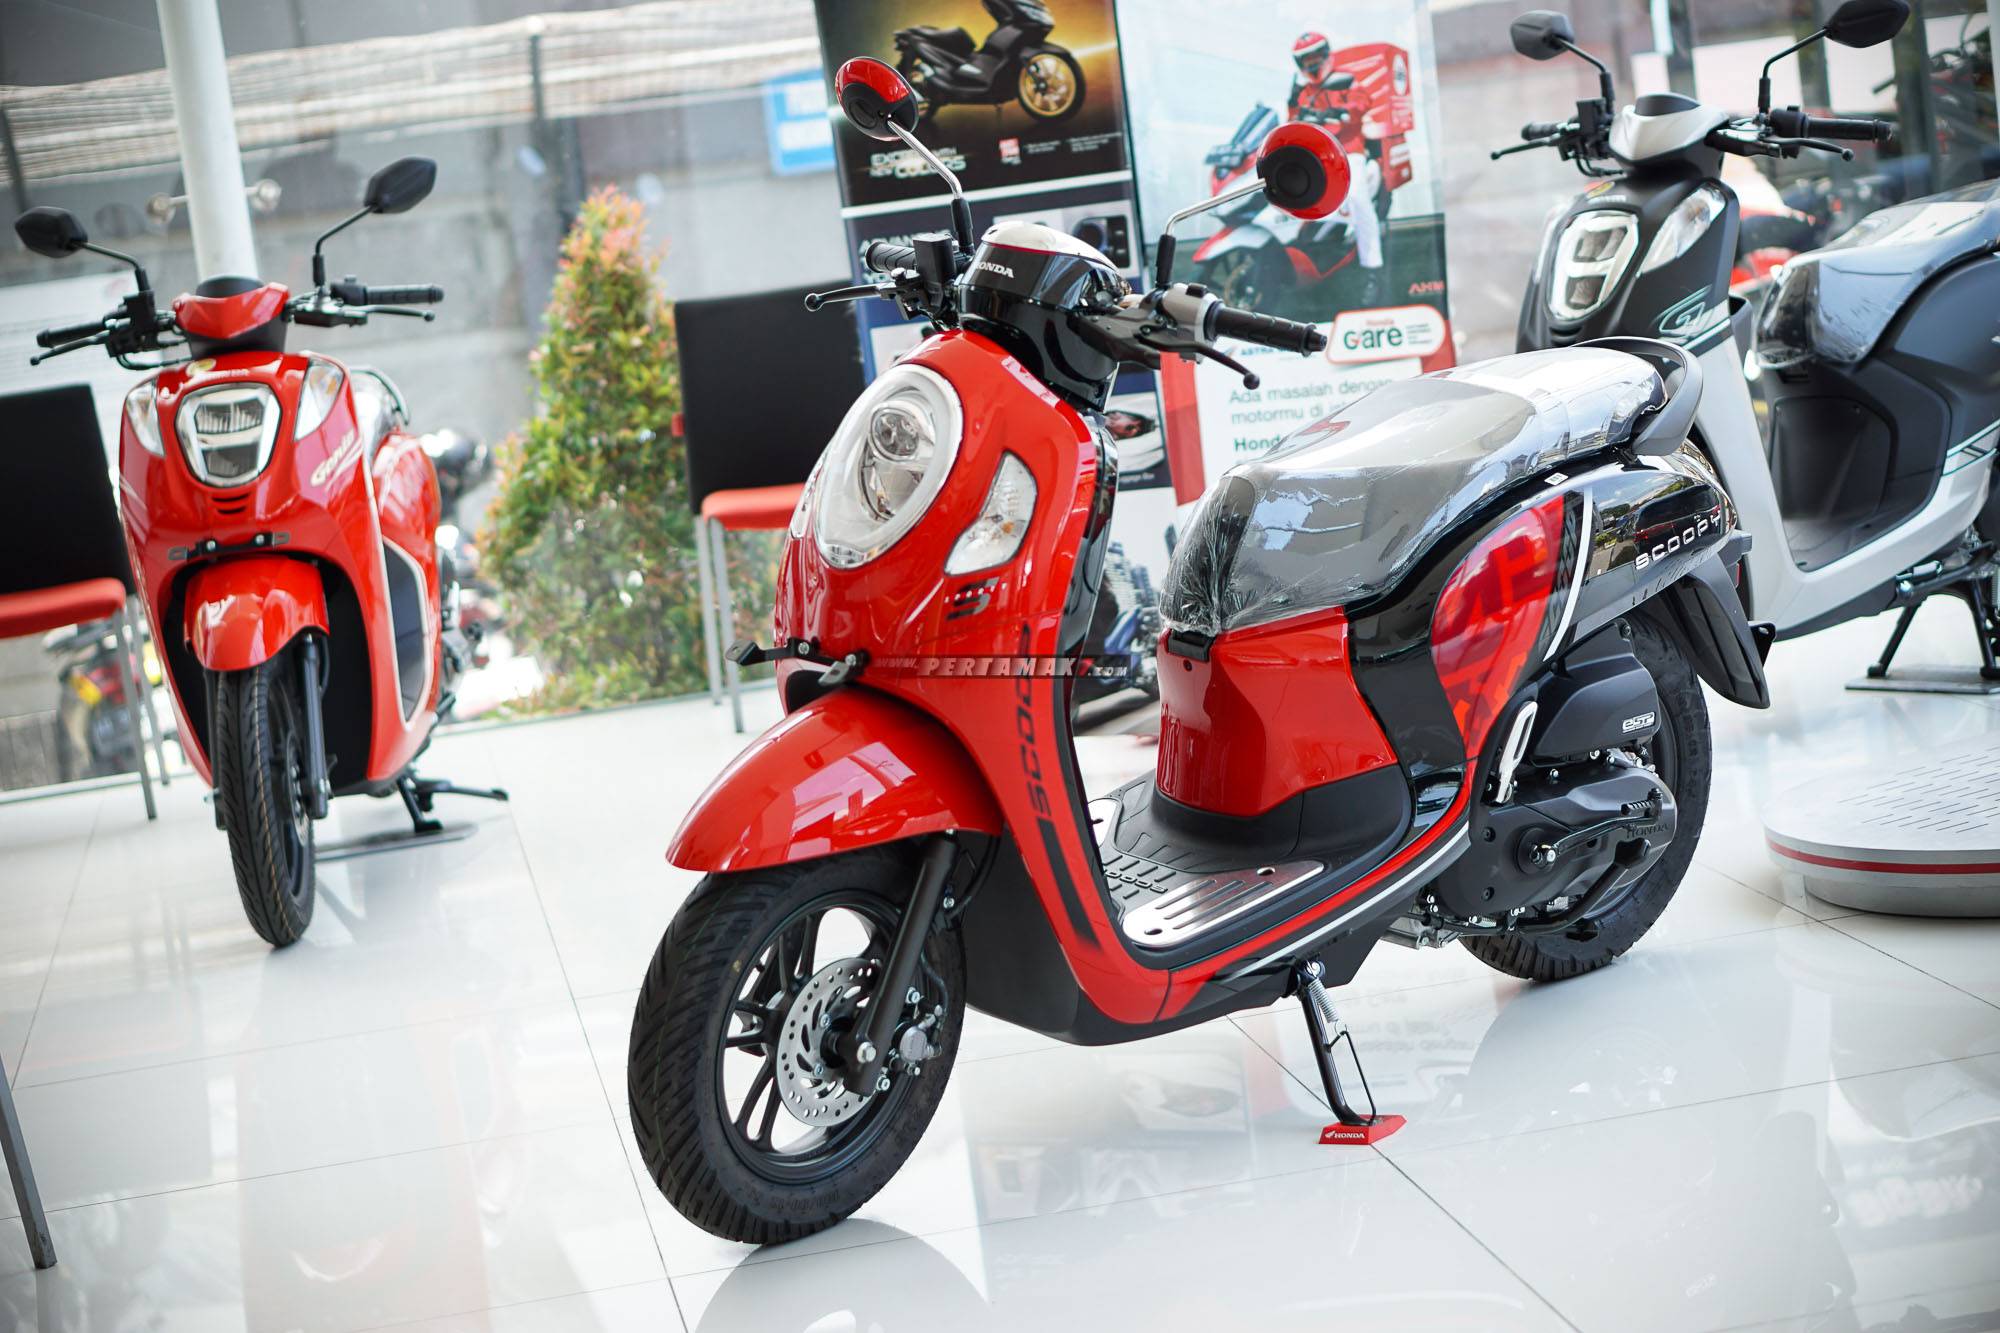 Scoopy Tampak Depan. Bertemu Honda Scoopy Terbaru Sporty Red, Matic Laris Manis, Foto